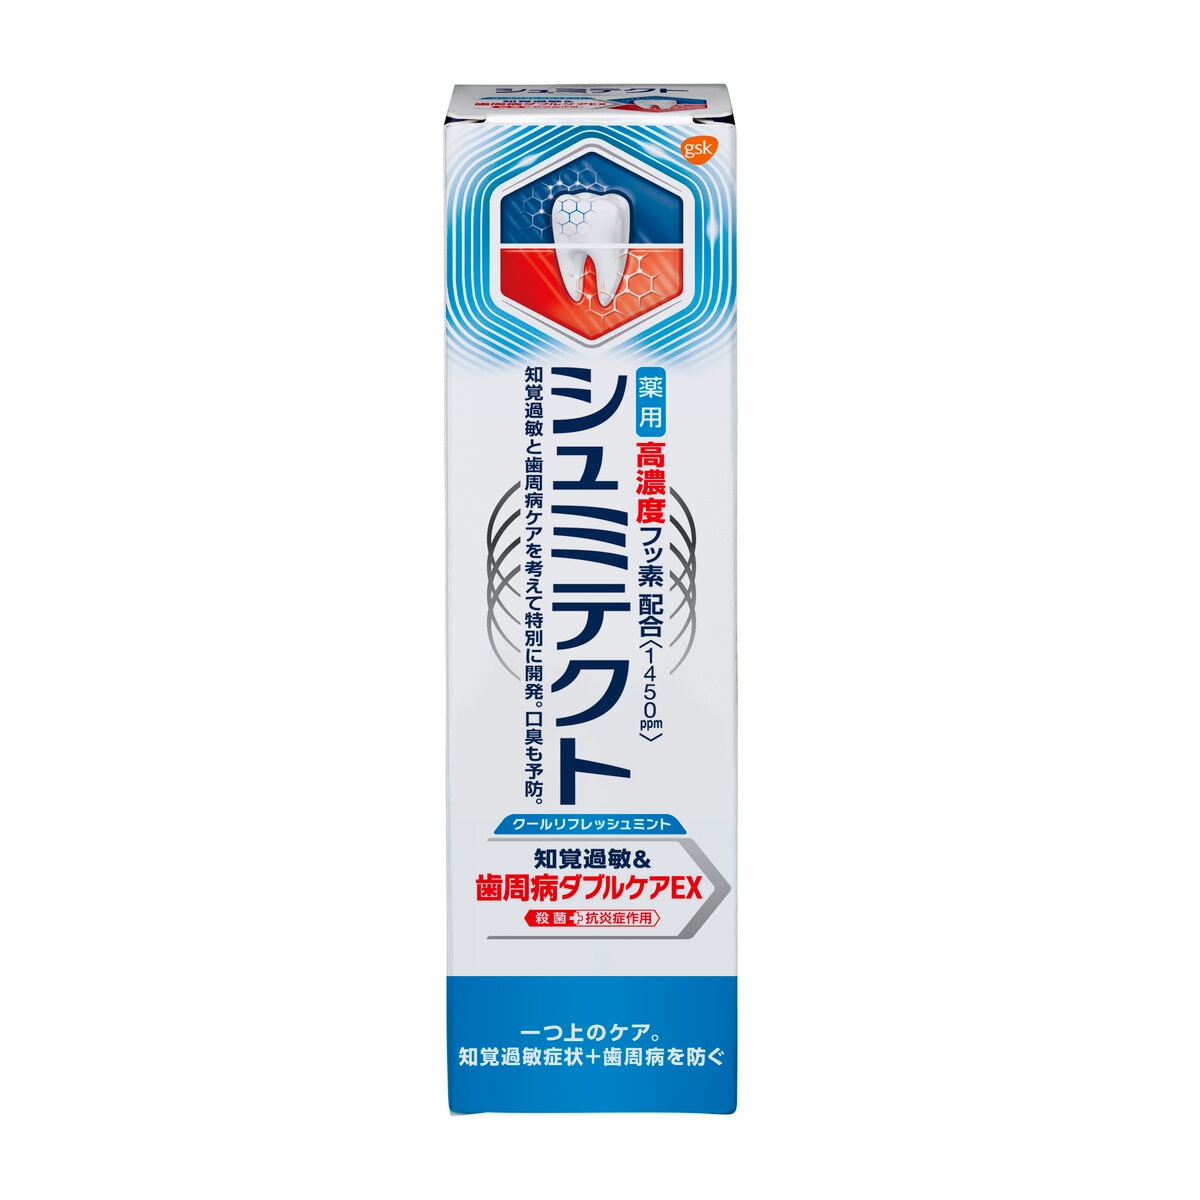 シュミテクト 歯周病ダブルケア EX リフレッシュミント 90g | Costco Japan